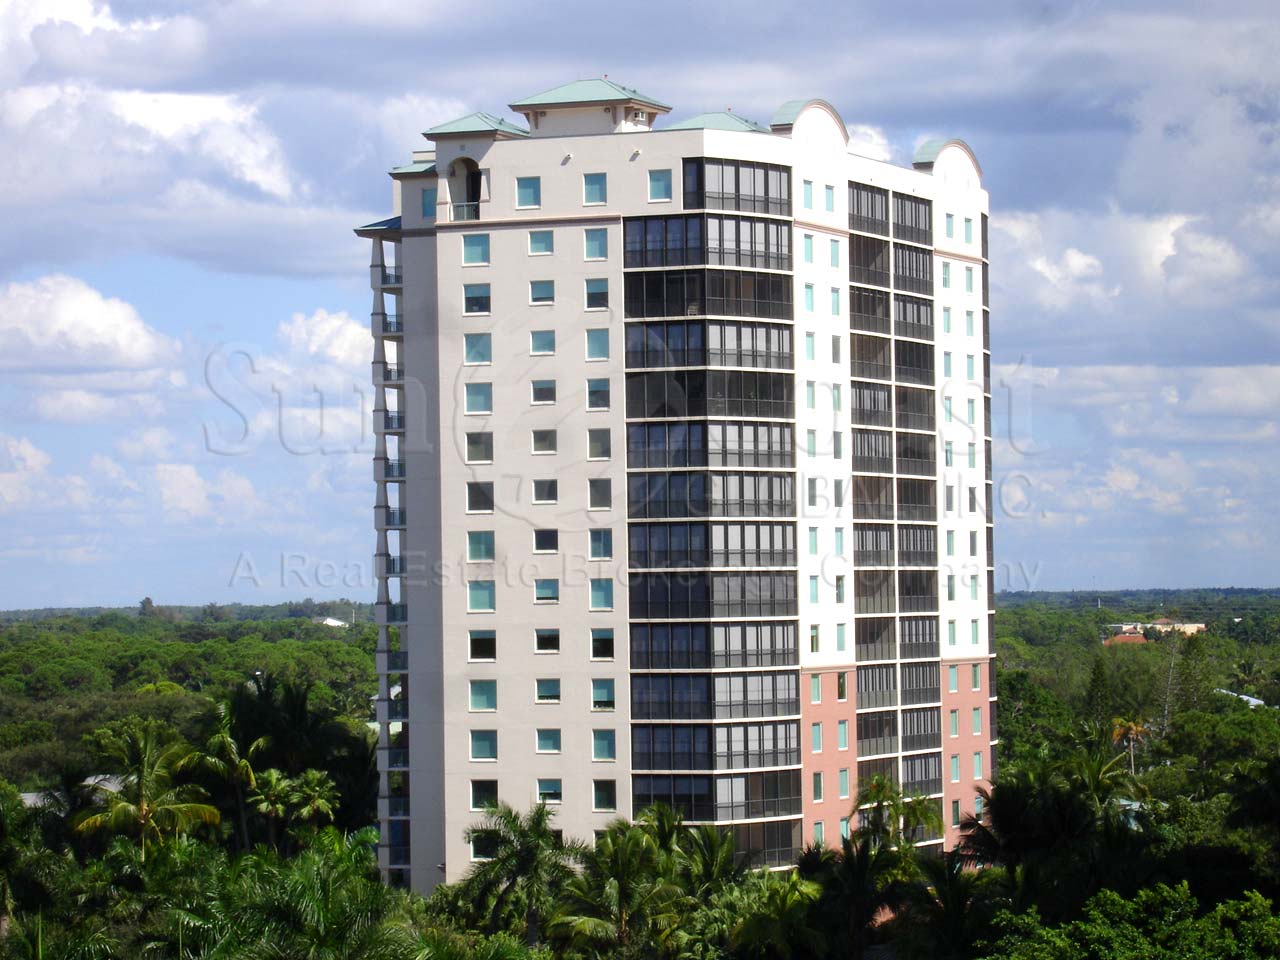 Nevis Condominium Building